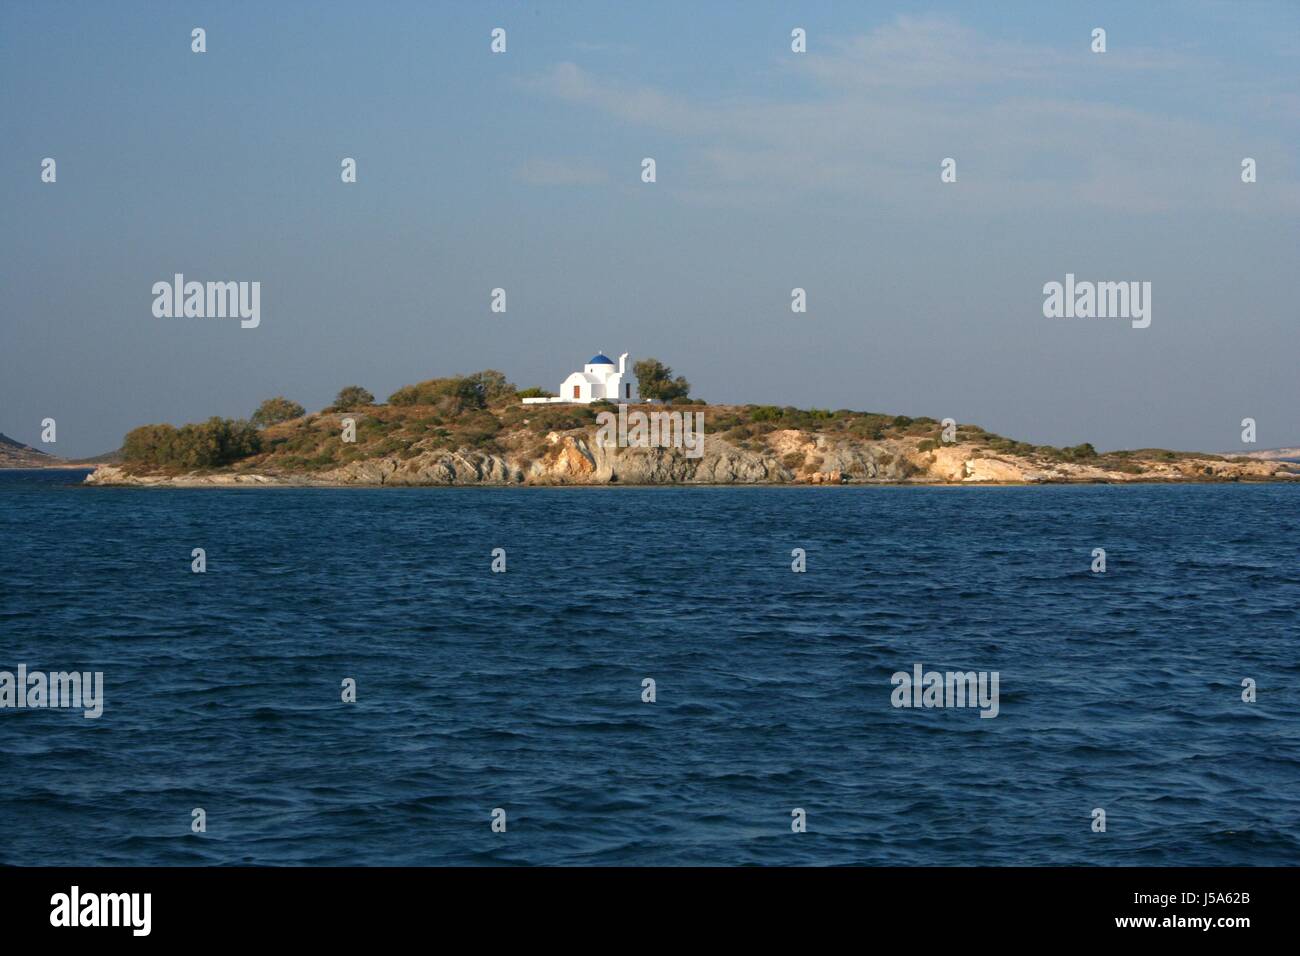 Chiesa grecia isola isola naoussa griechischer stil kykladenstil blauer himmel Foto Stock